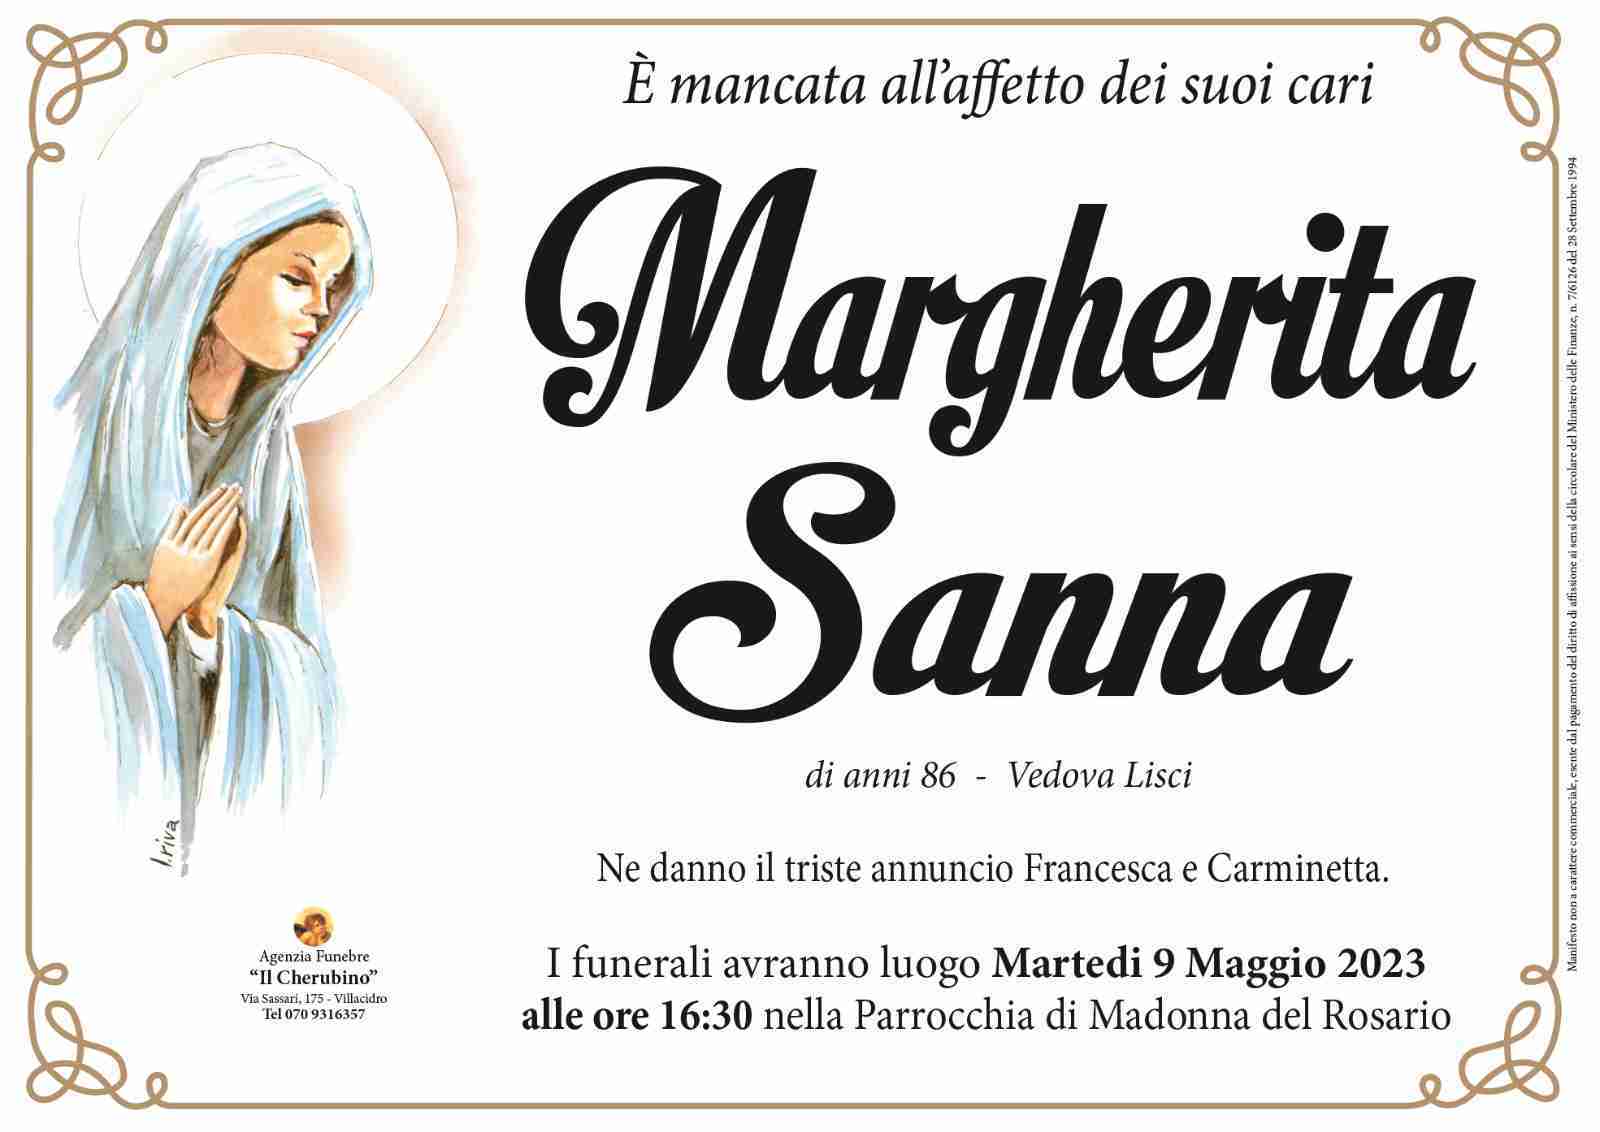 Sanna Margherita